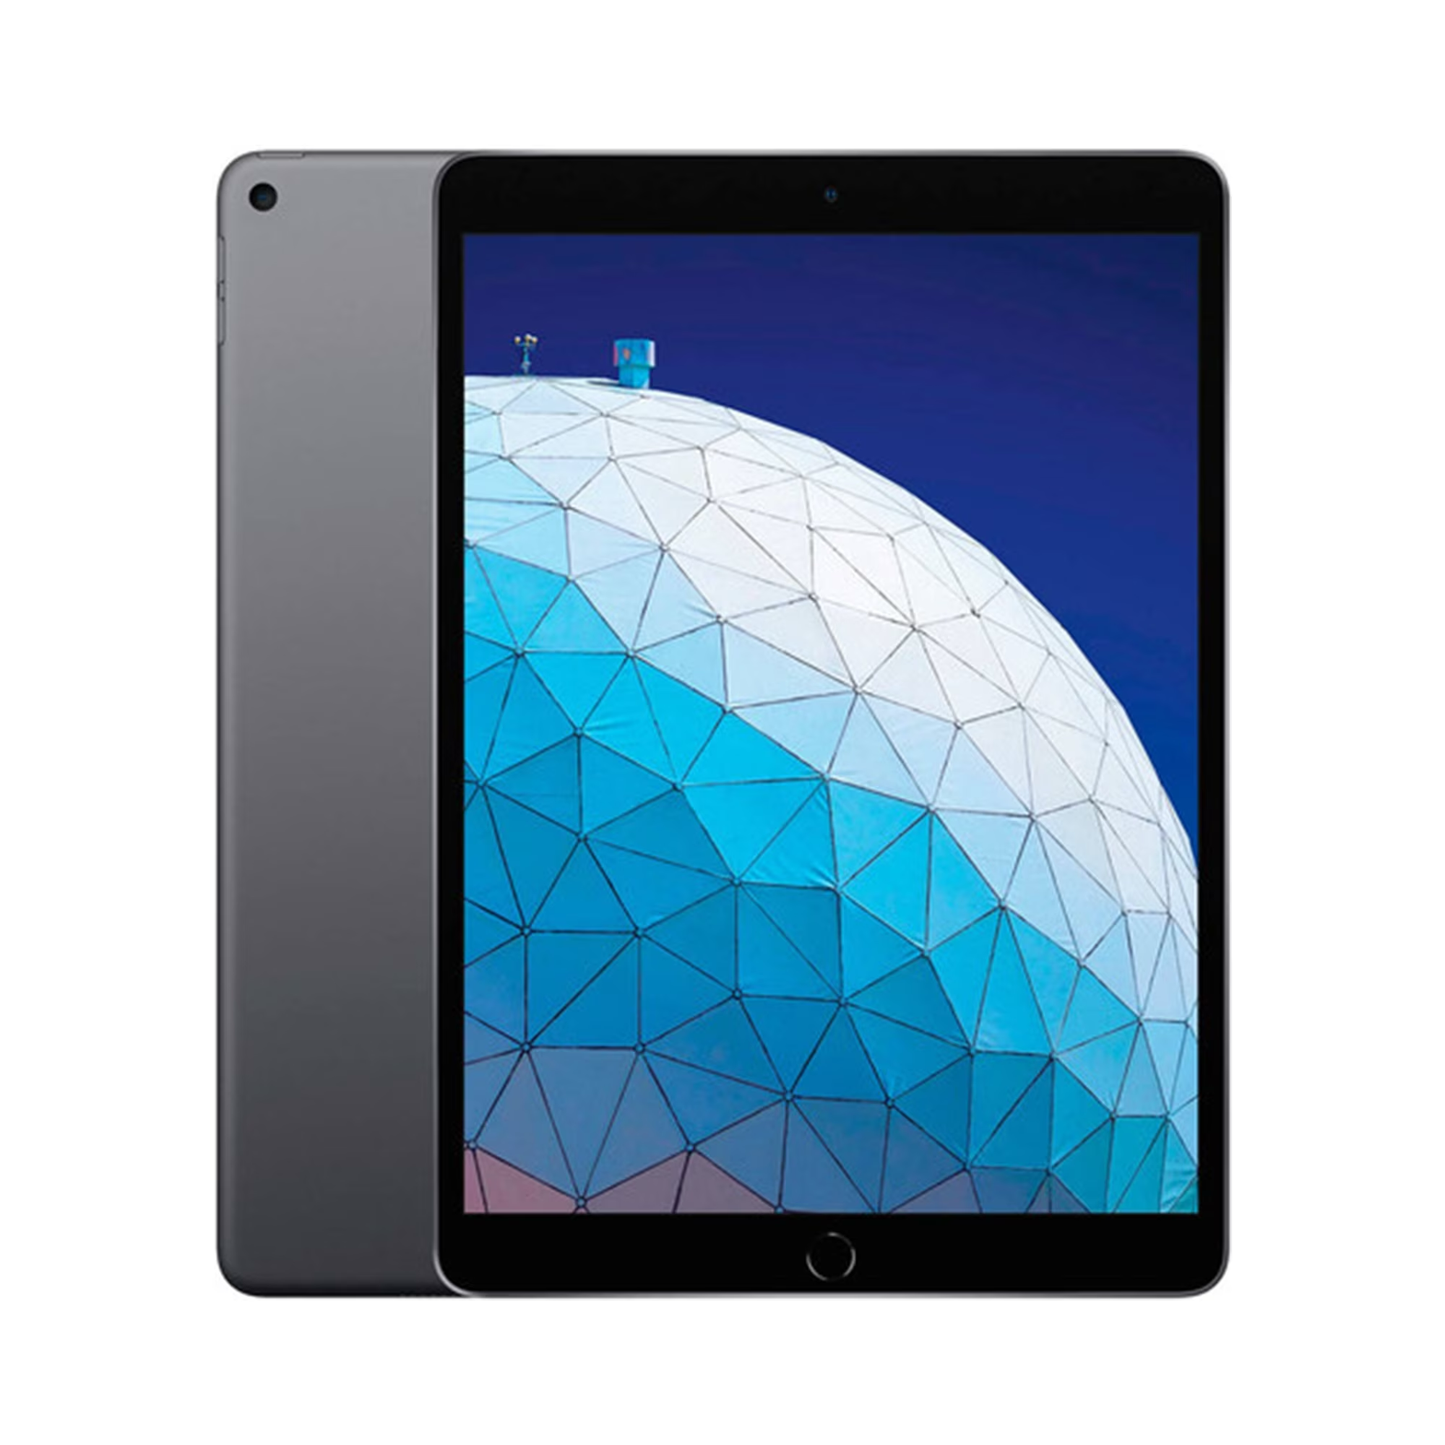 2016 iPad Pro 9.7" (128gb + Wifi + Cell)